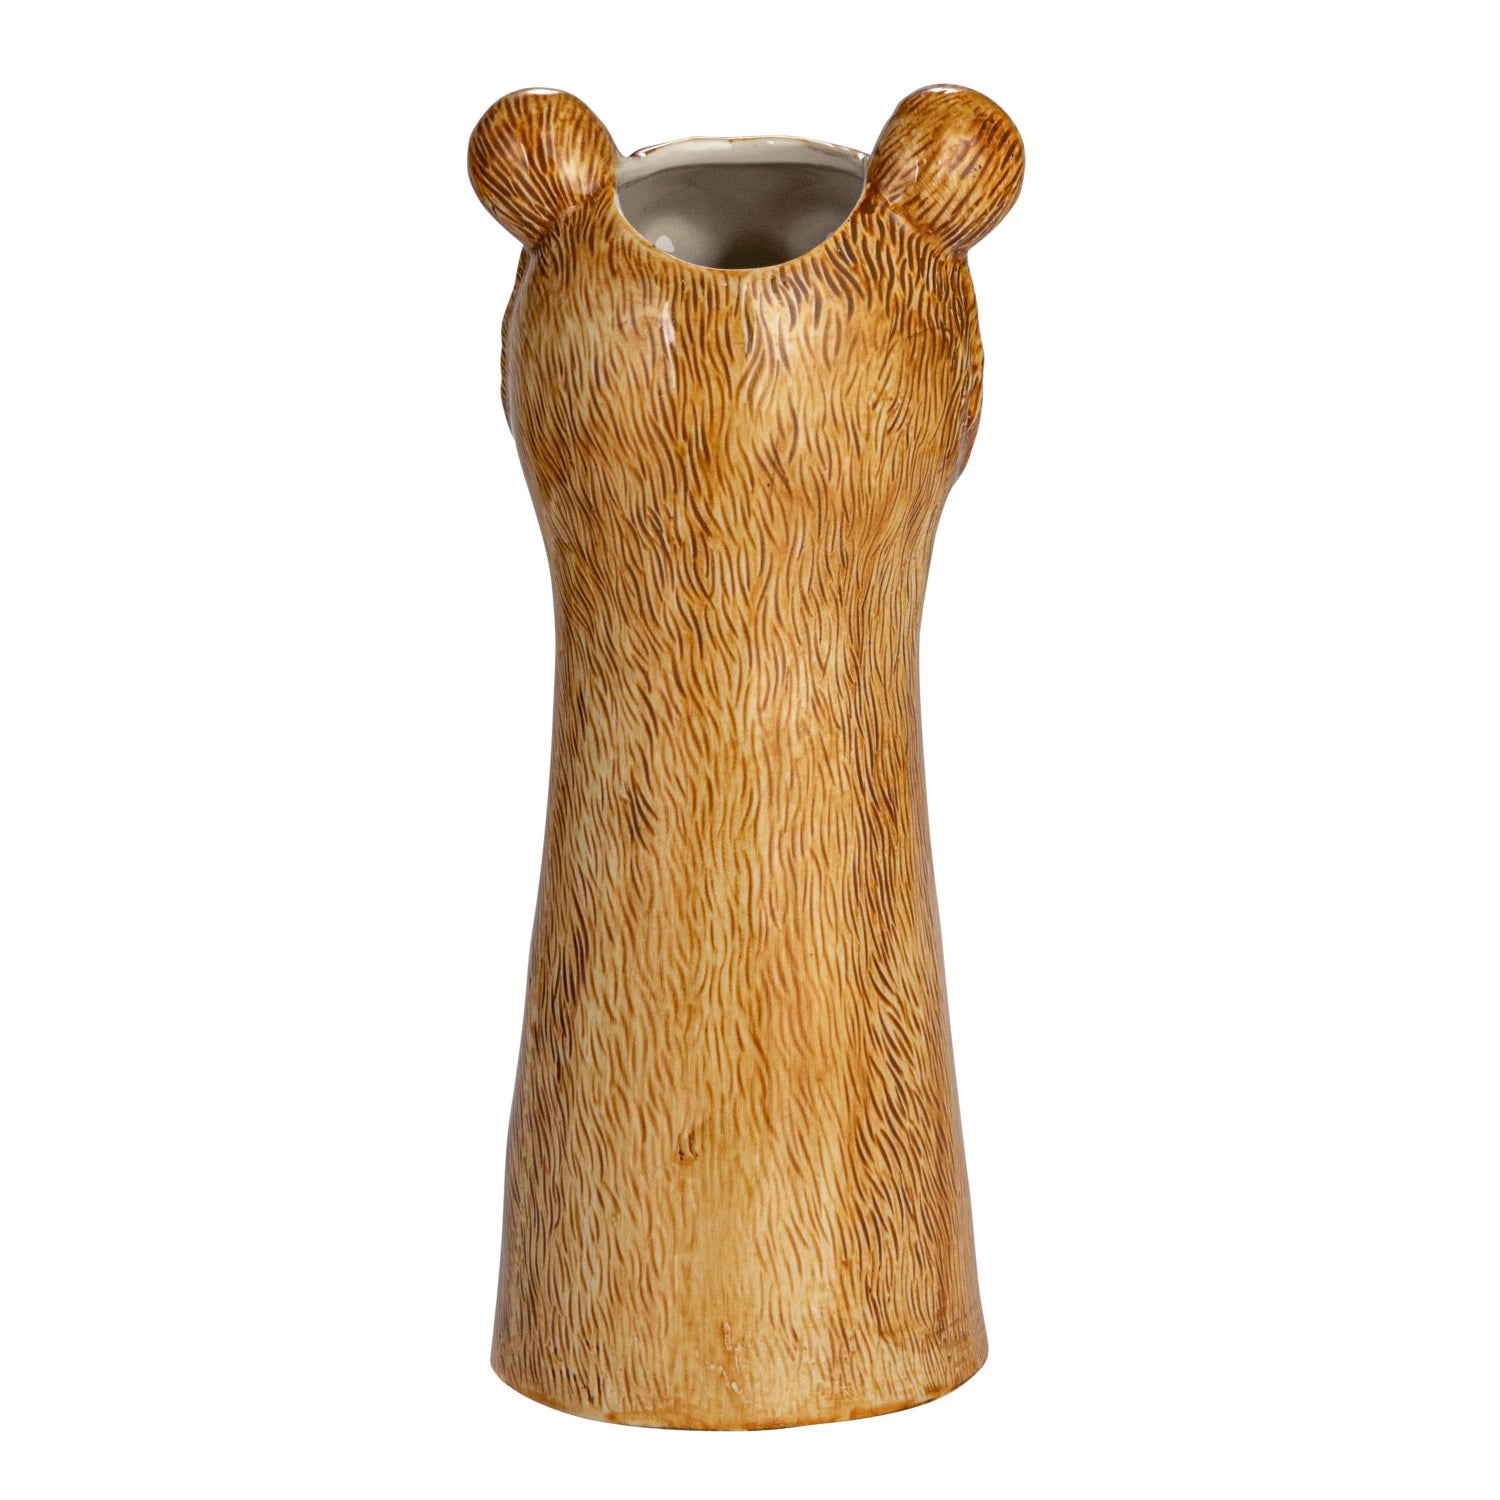 Hand-Painted Stoneware Bear Vase